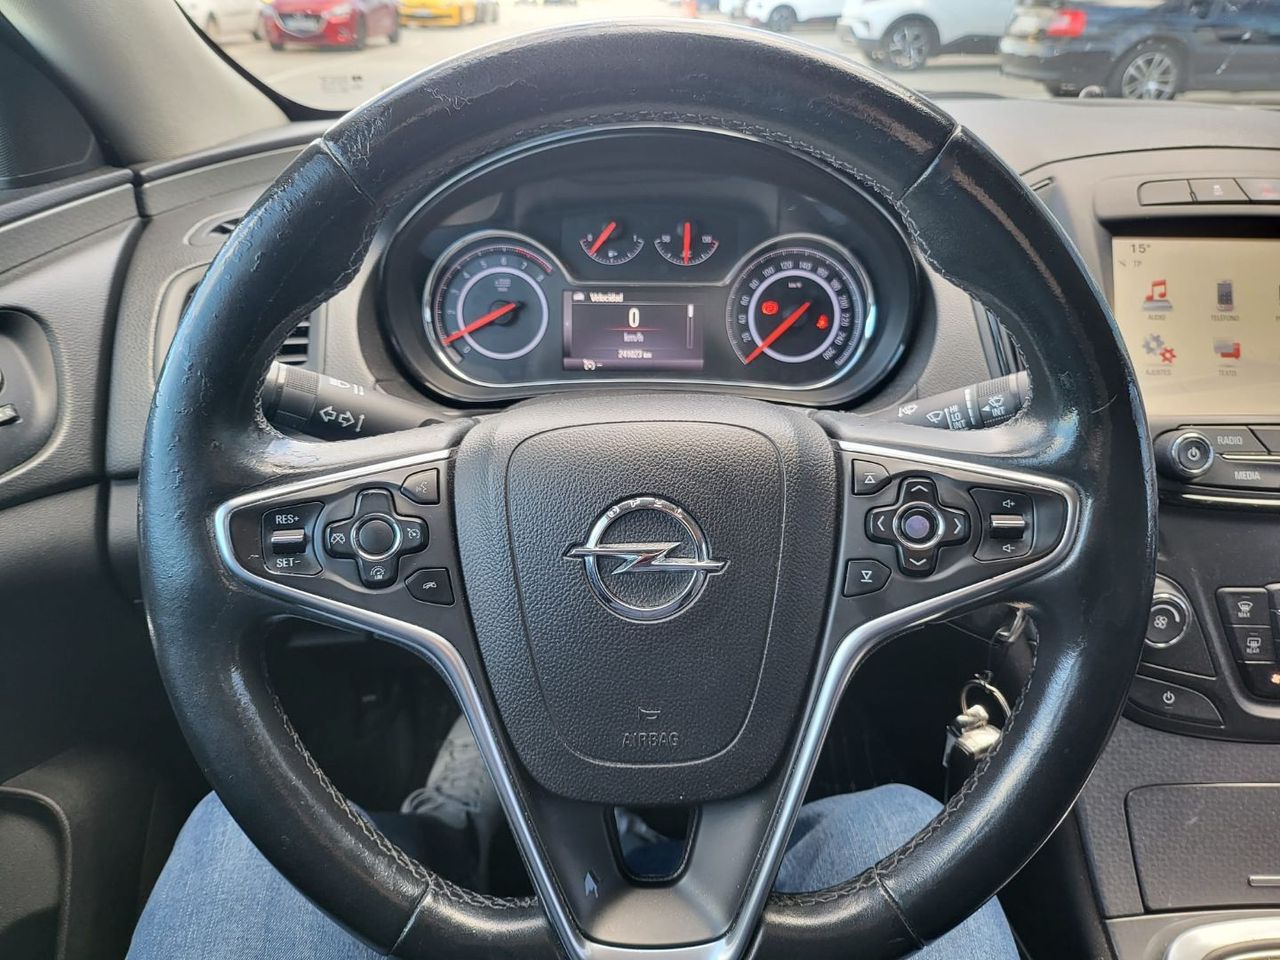 Foto Opel Insignia  18